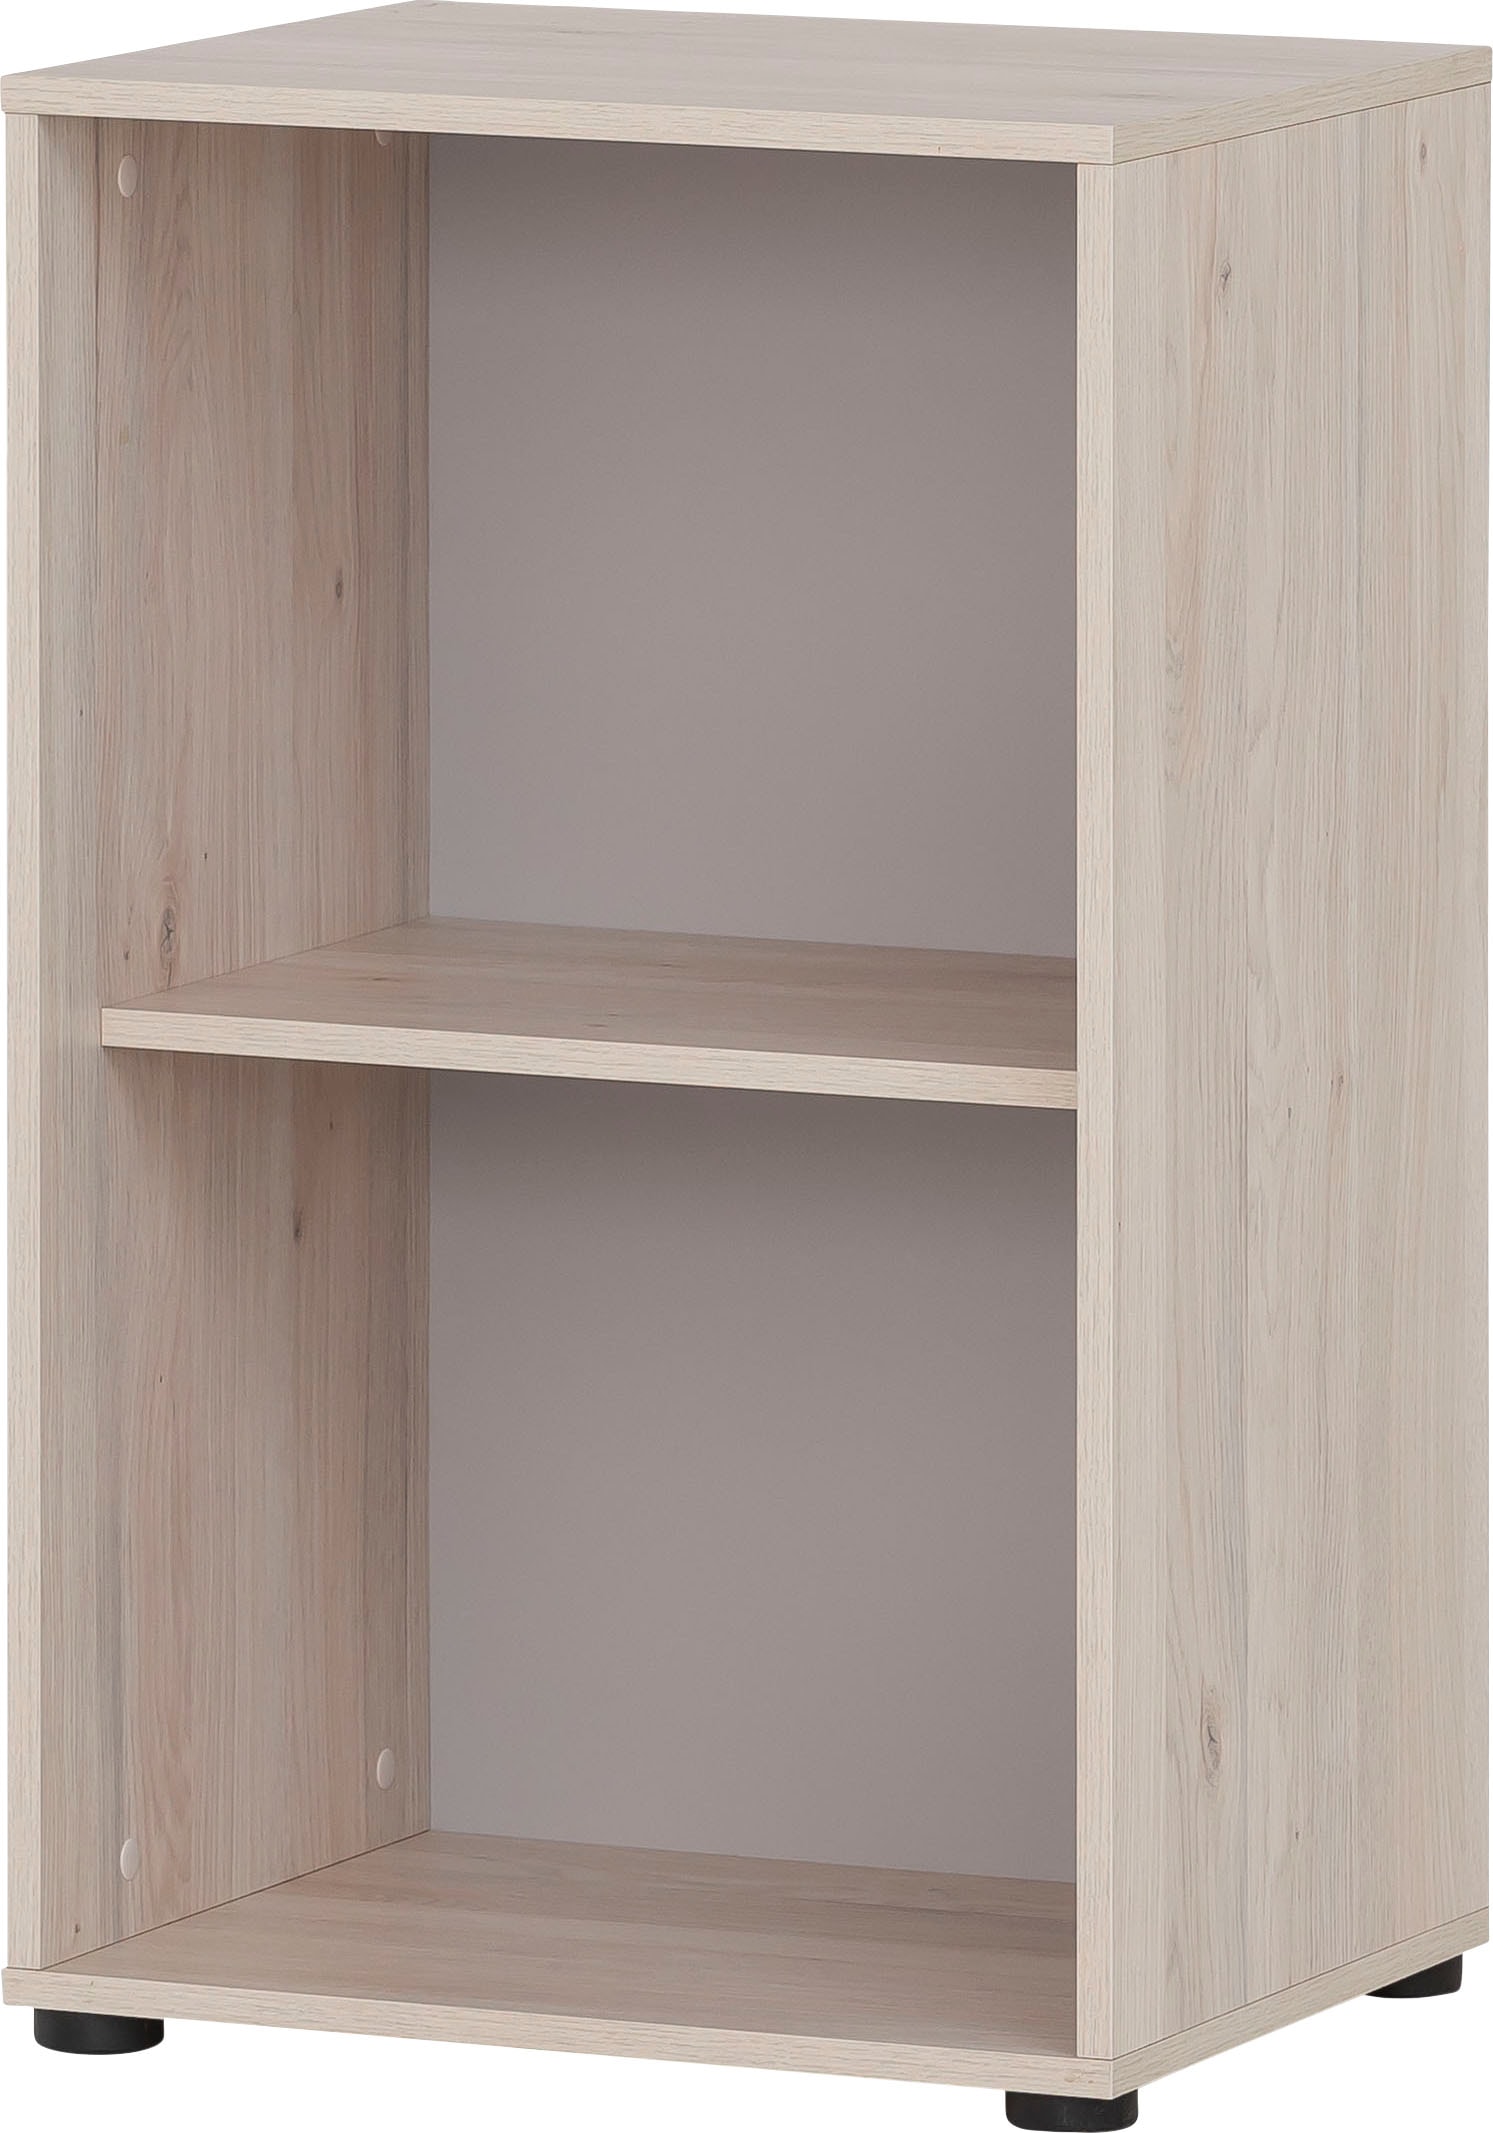 Schildmeyer Büro-Set »Serie 400«, (5 tlg.), bestehend aus 2 Regalen, 2 Schränken, 1 Regalkreuz